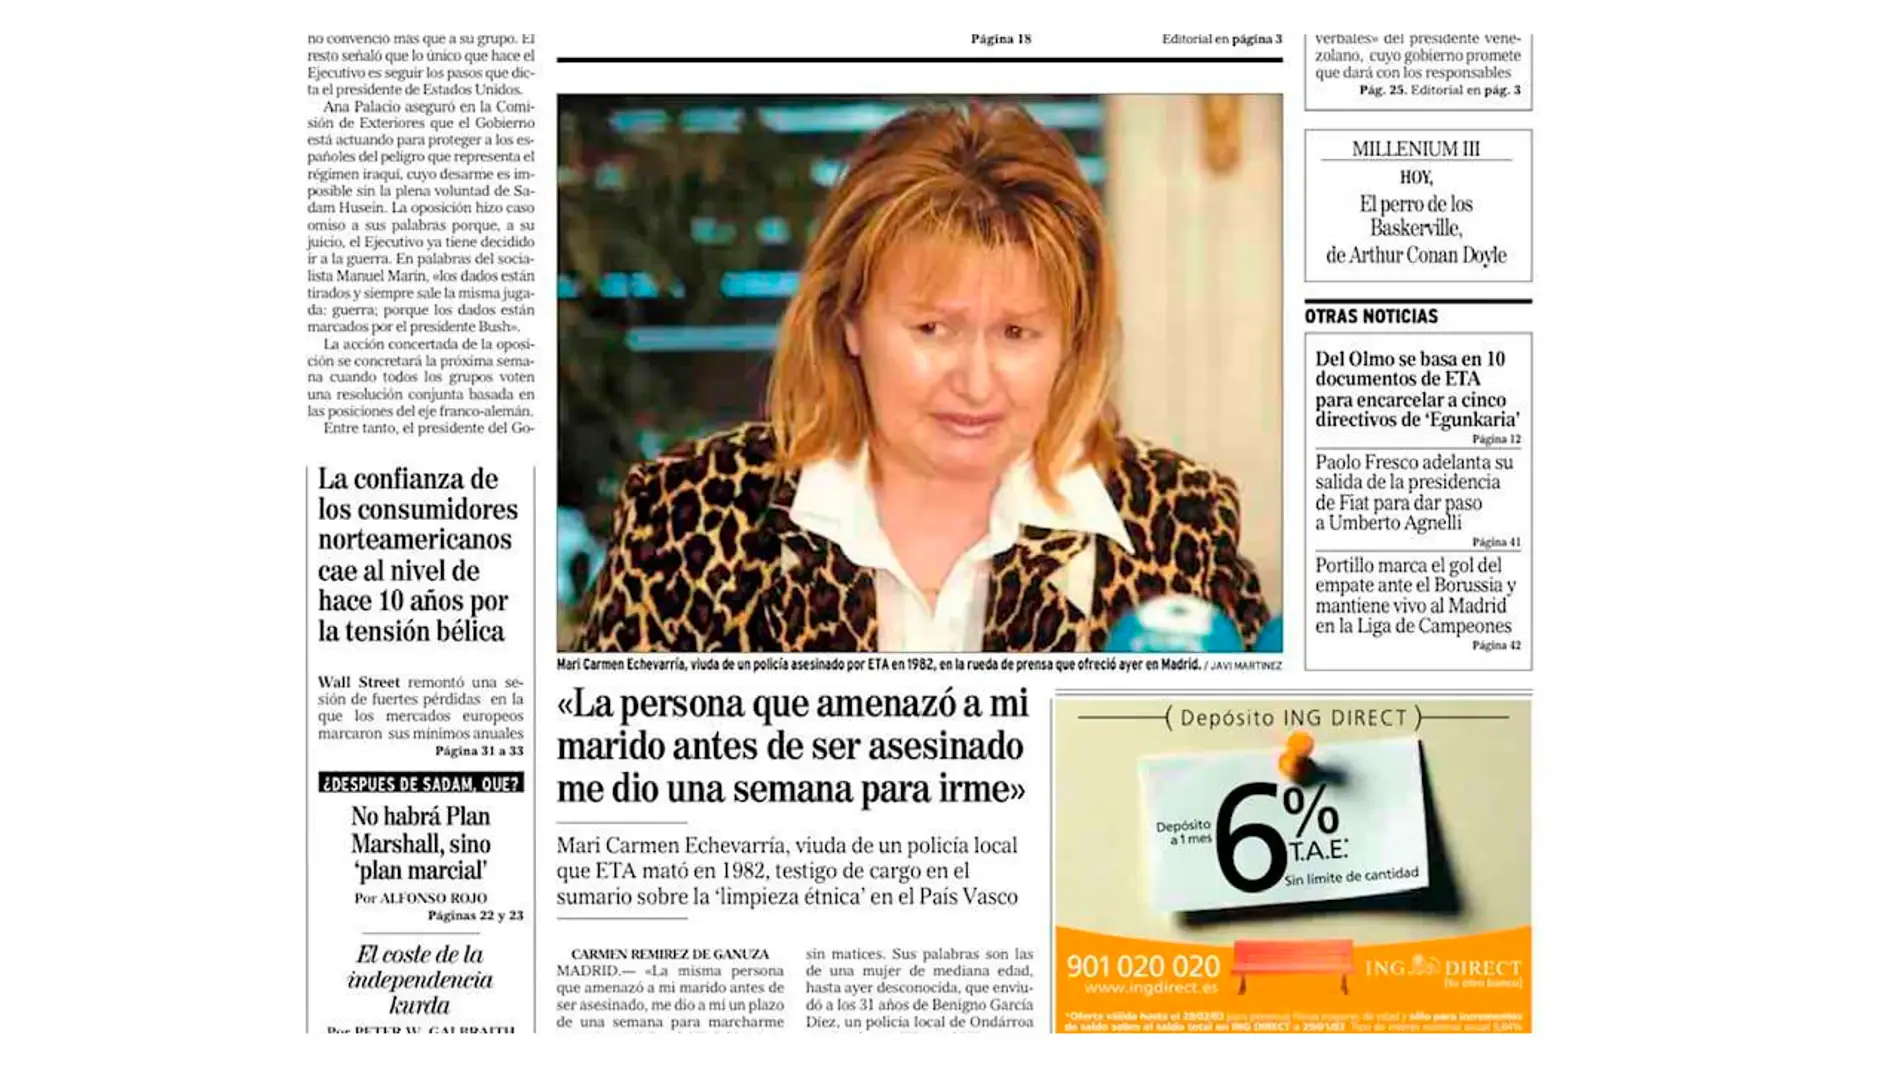 Detalle de la portada del diario El Mundo en la que se cuenta la historia de Mari Carmen Echevarría